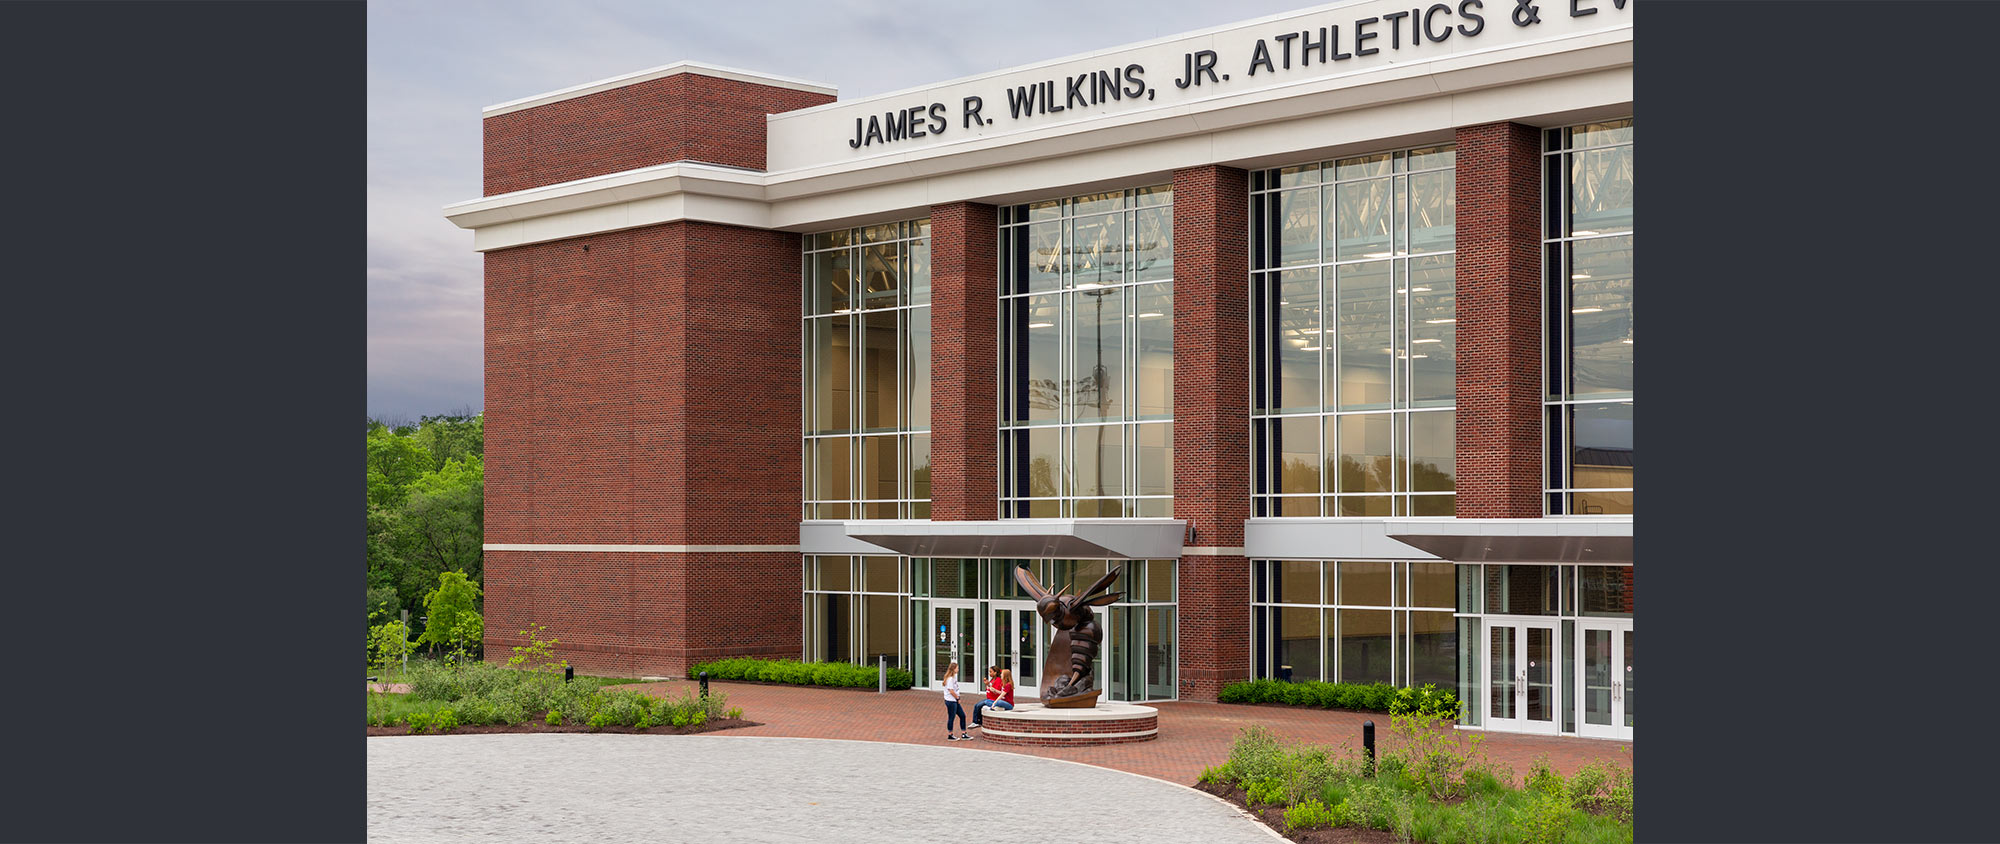 Shenandoah University, James R. Wilkins, Jr. Athletics and Events Center